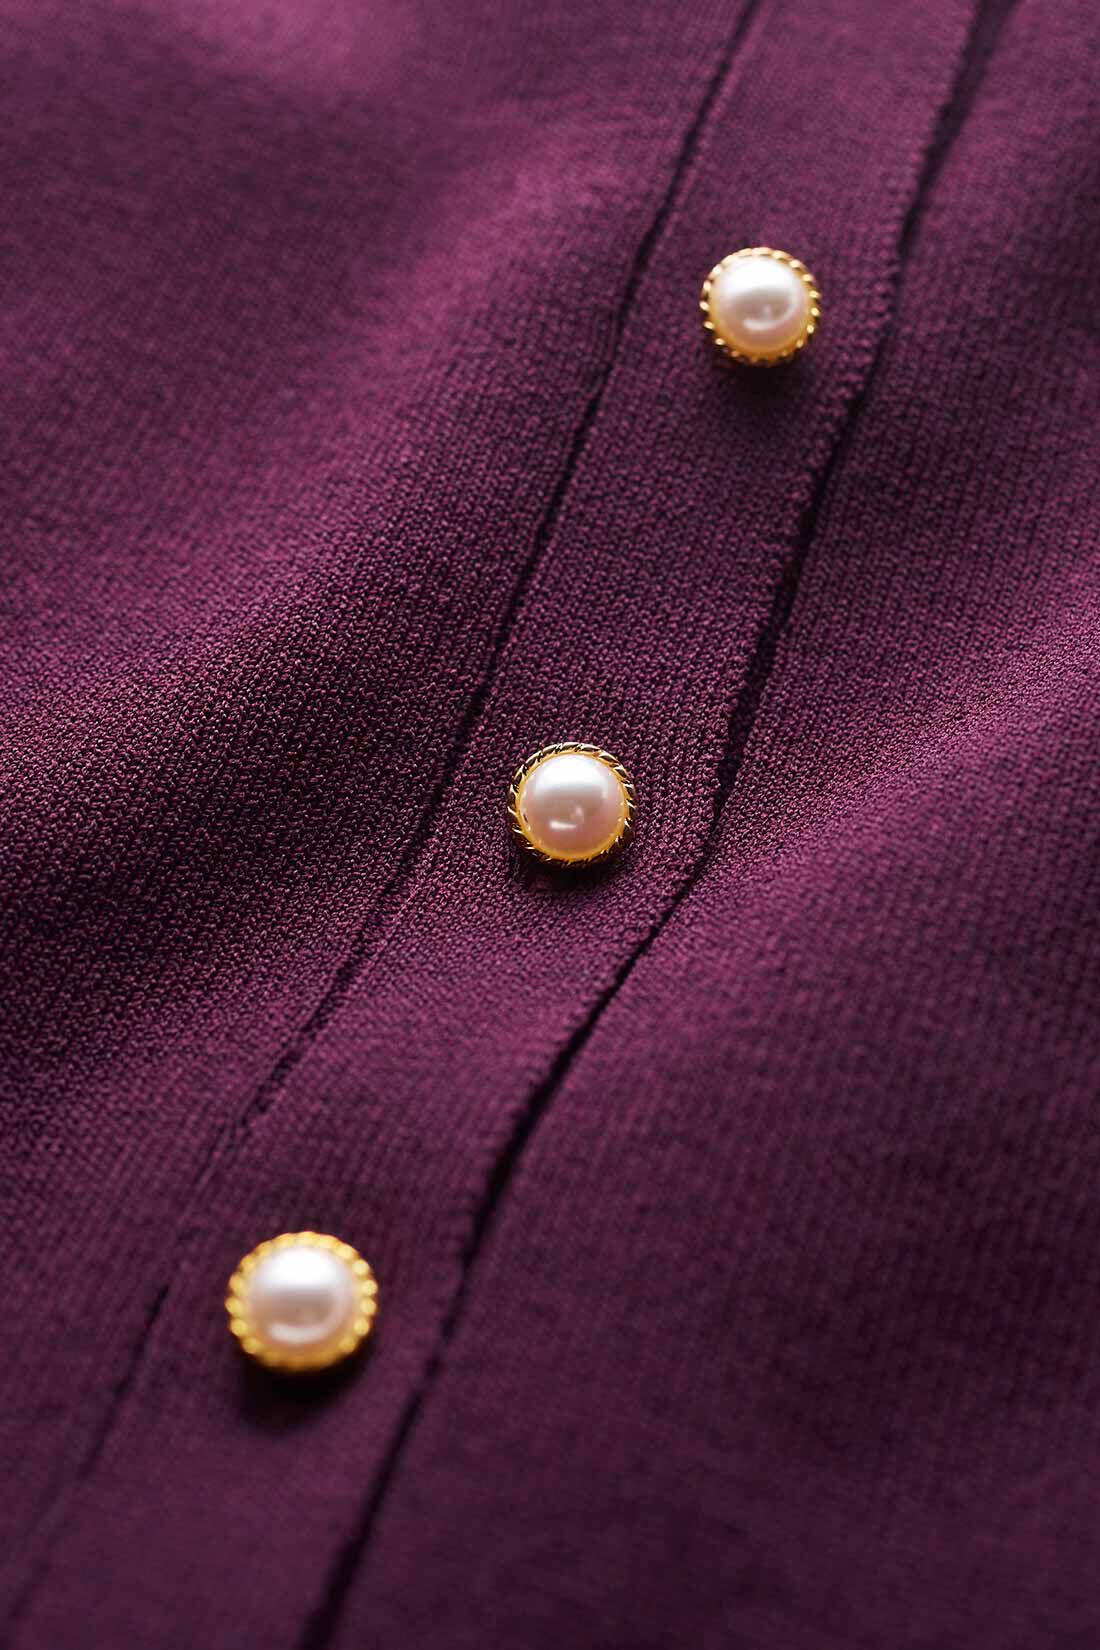 イディット|IEDIT[イディット]　パールボタンが上品な袖プリーツ風カーディガン〈ネイビー〉|晩夏から心地よく着られる、シャリ感のあるレーヨン混素材を使用。 ※お届けするカラーとは異なります。